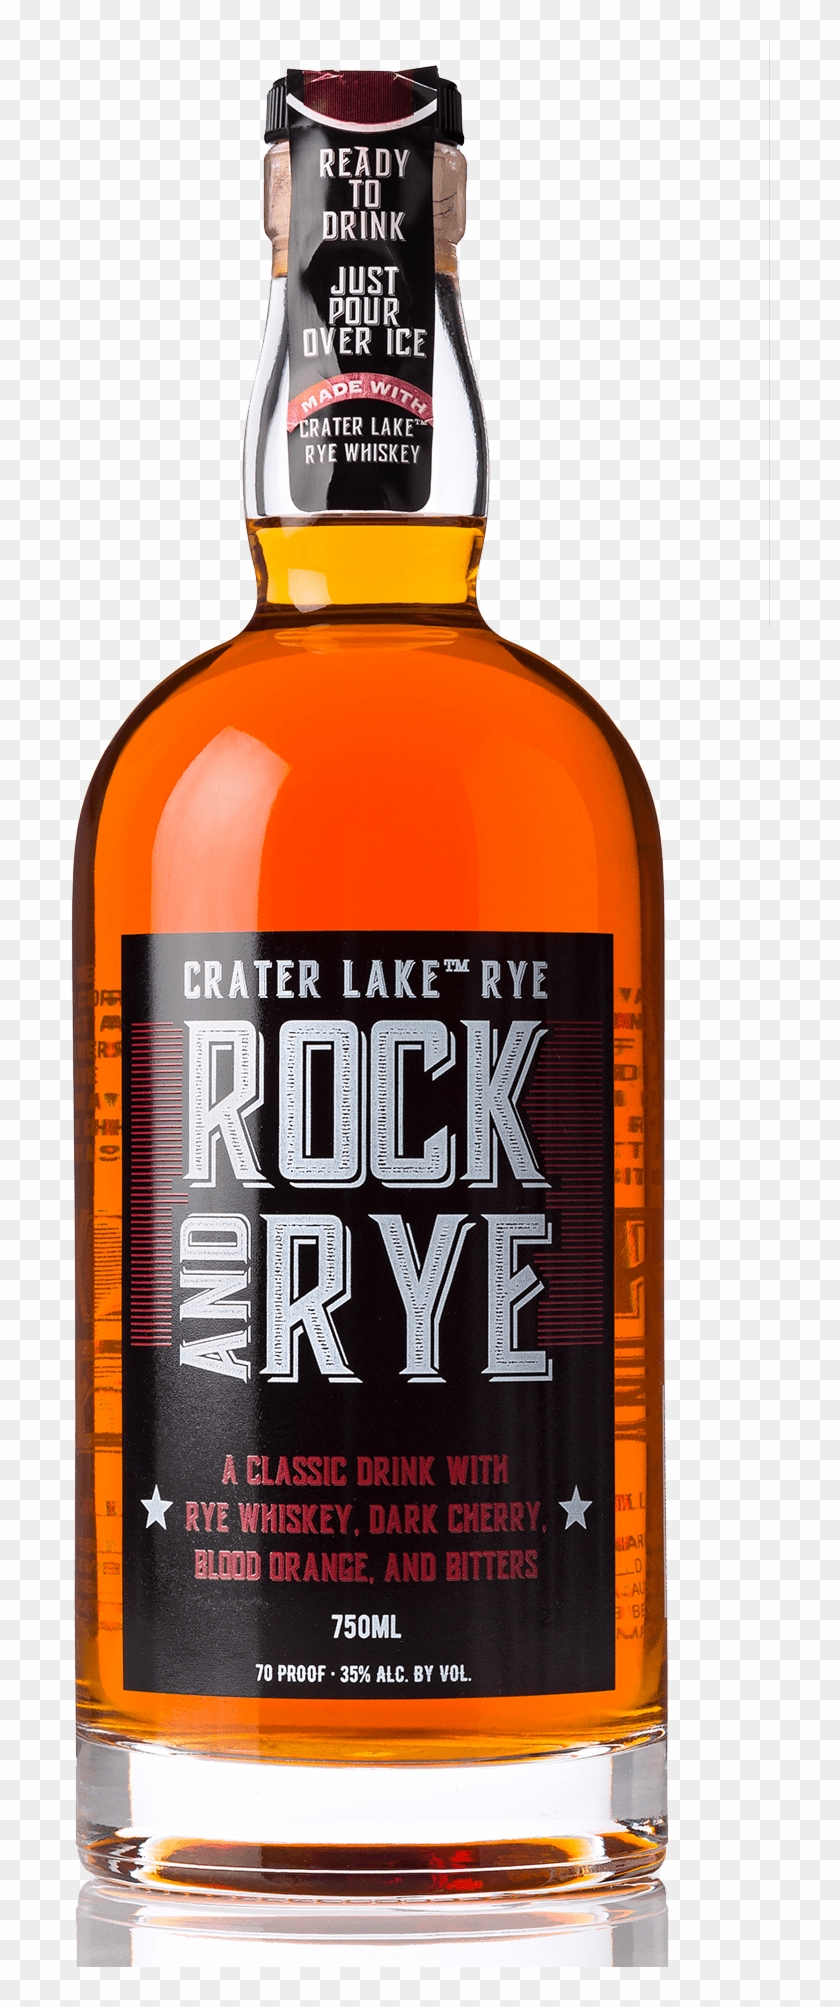 Rock & Rye-750ml - Grain Whisky Clipart #2888049